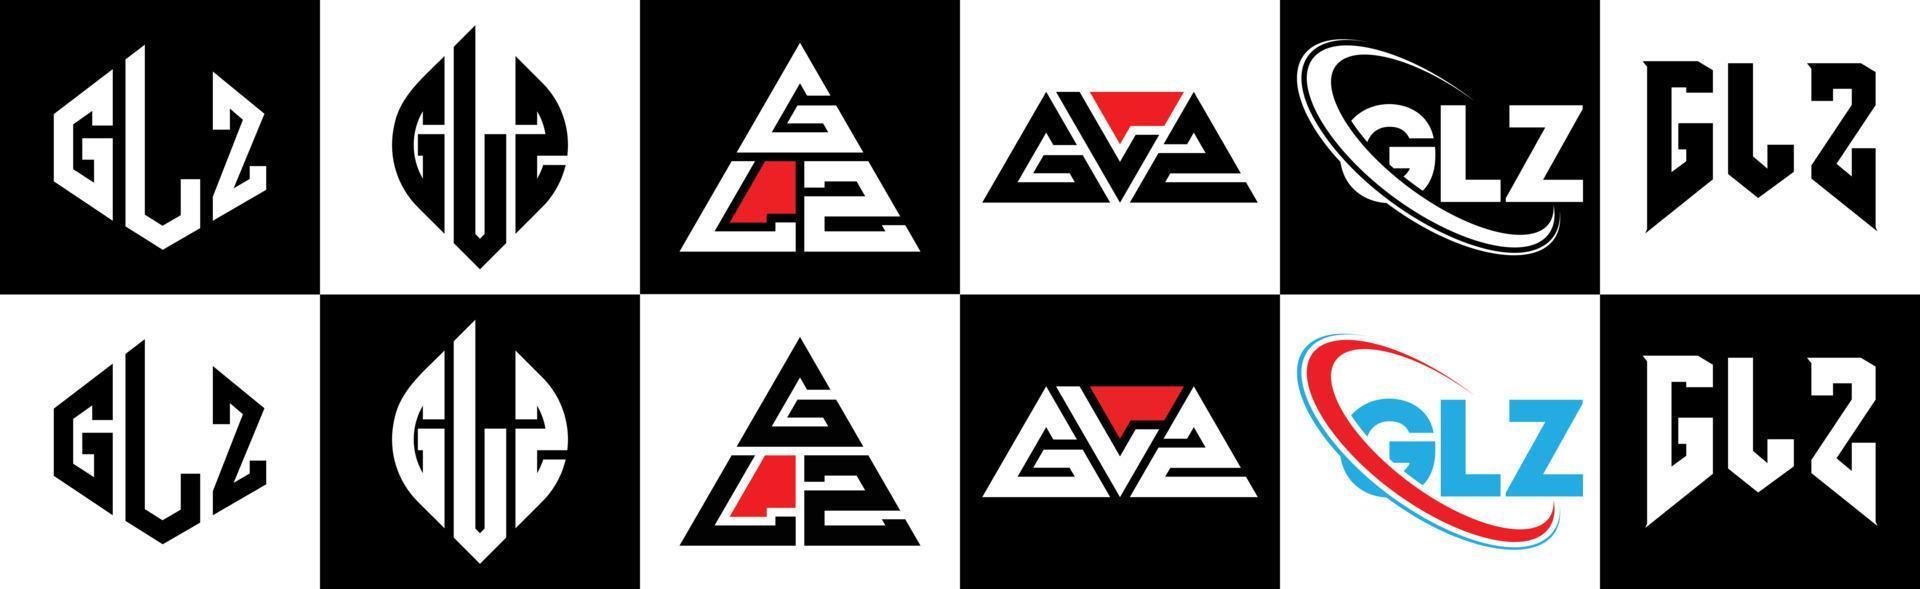 glz-Buchstaben-Logo-Design in sechs Stilen. glz Polygon, Kreis, Dreieck, Sechseck, flacher und einfacher Stil mit schwarz-weißem Buchstabenlogo in einer Zeichenfläche. glz minimalistisches und klassisches logo vektor